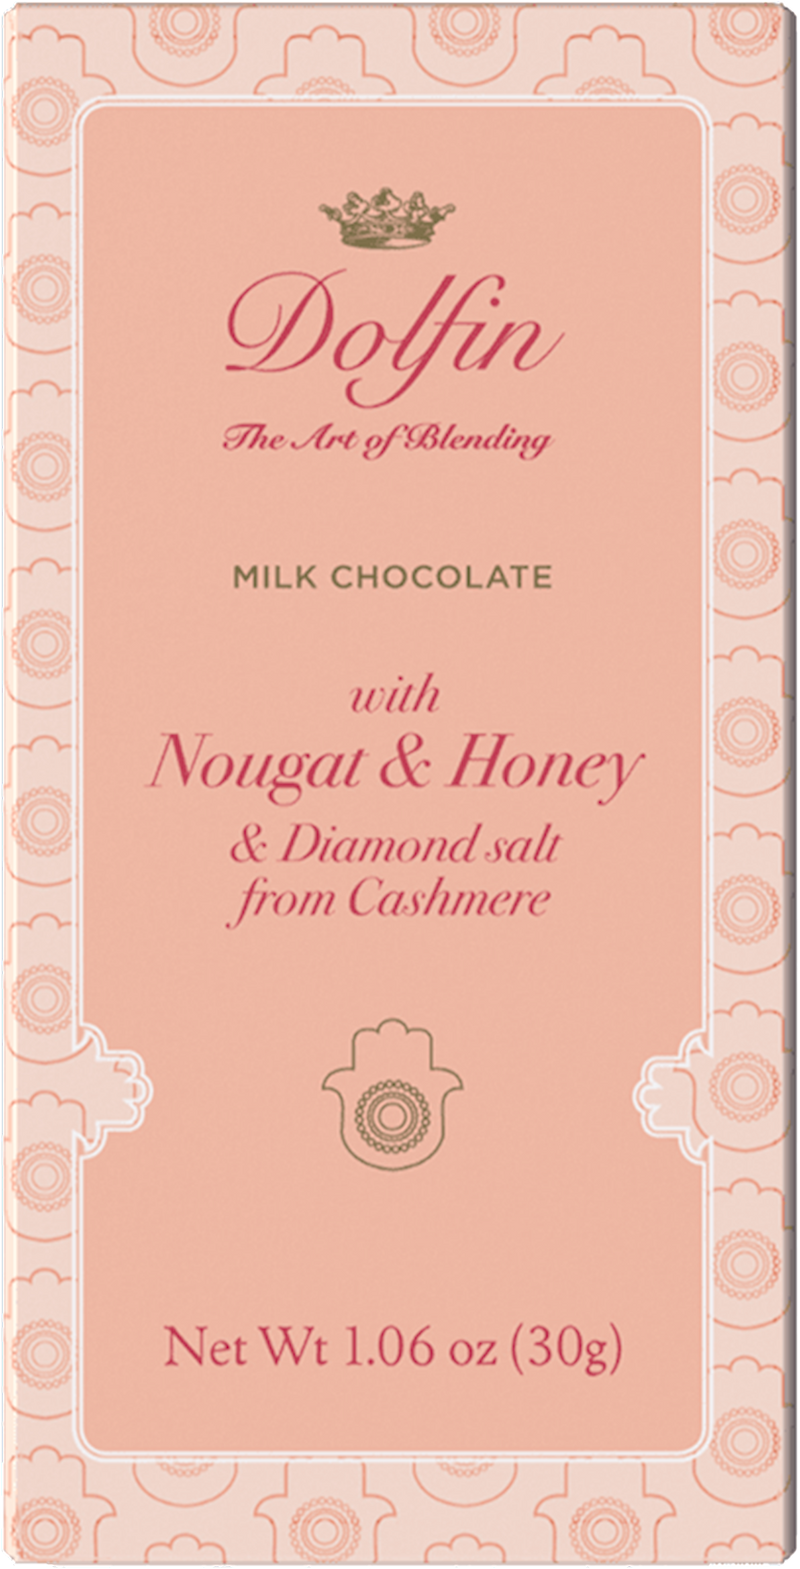 Teeny tiny Milk Chocolate Bars with Nougat, Honey & Sea Salt